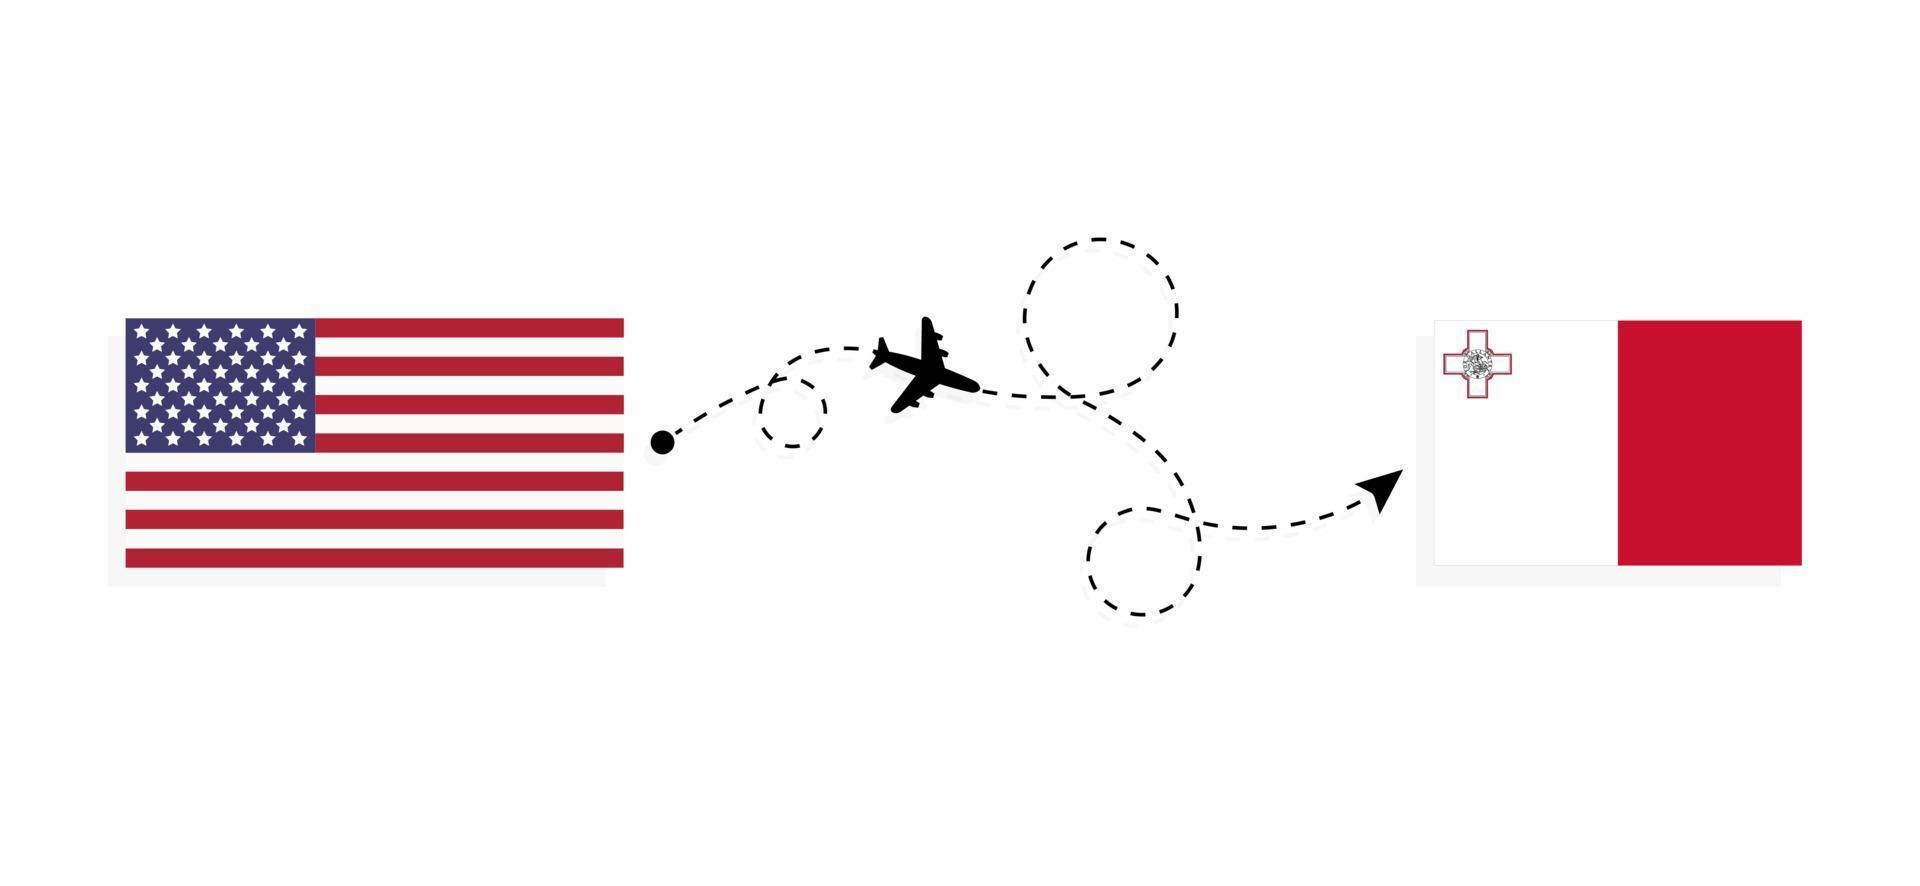 vol et voyage des états-unis à malte par concept de voyage en avion de passagers vecteur